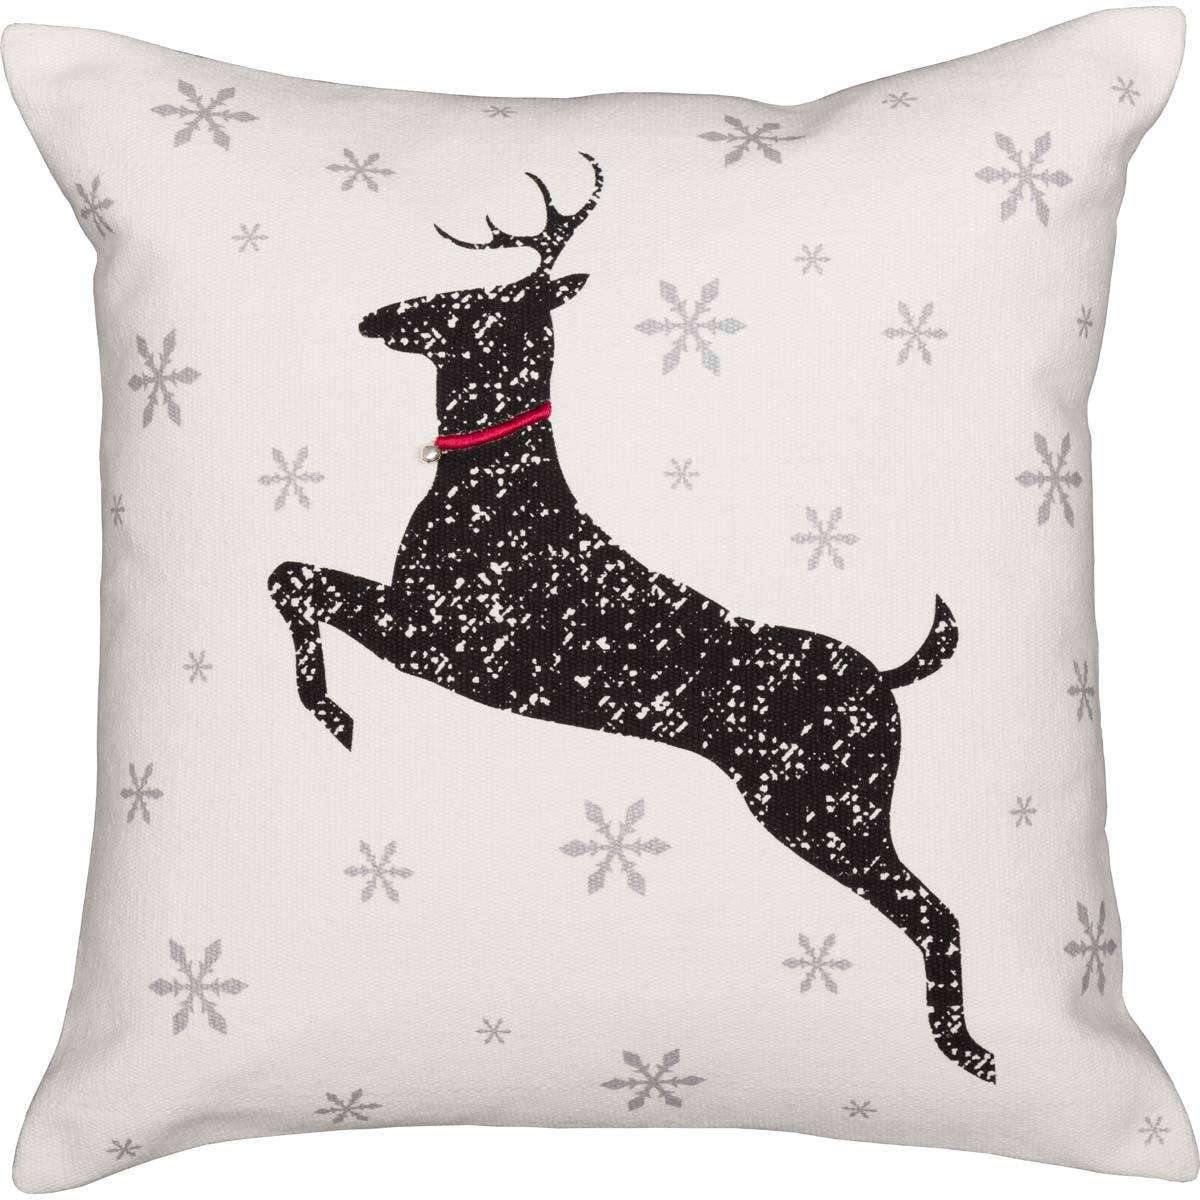 Emmie Deer Pillow 18x18 - The Fox Decor